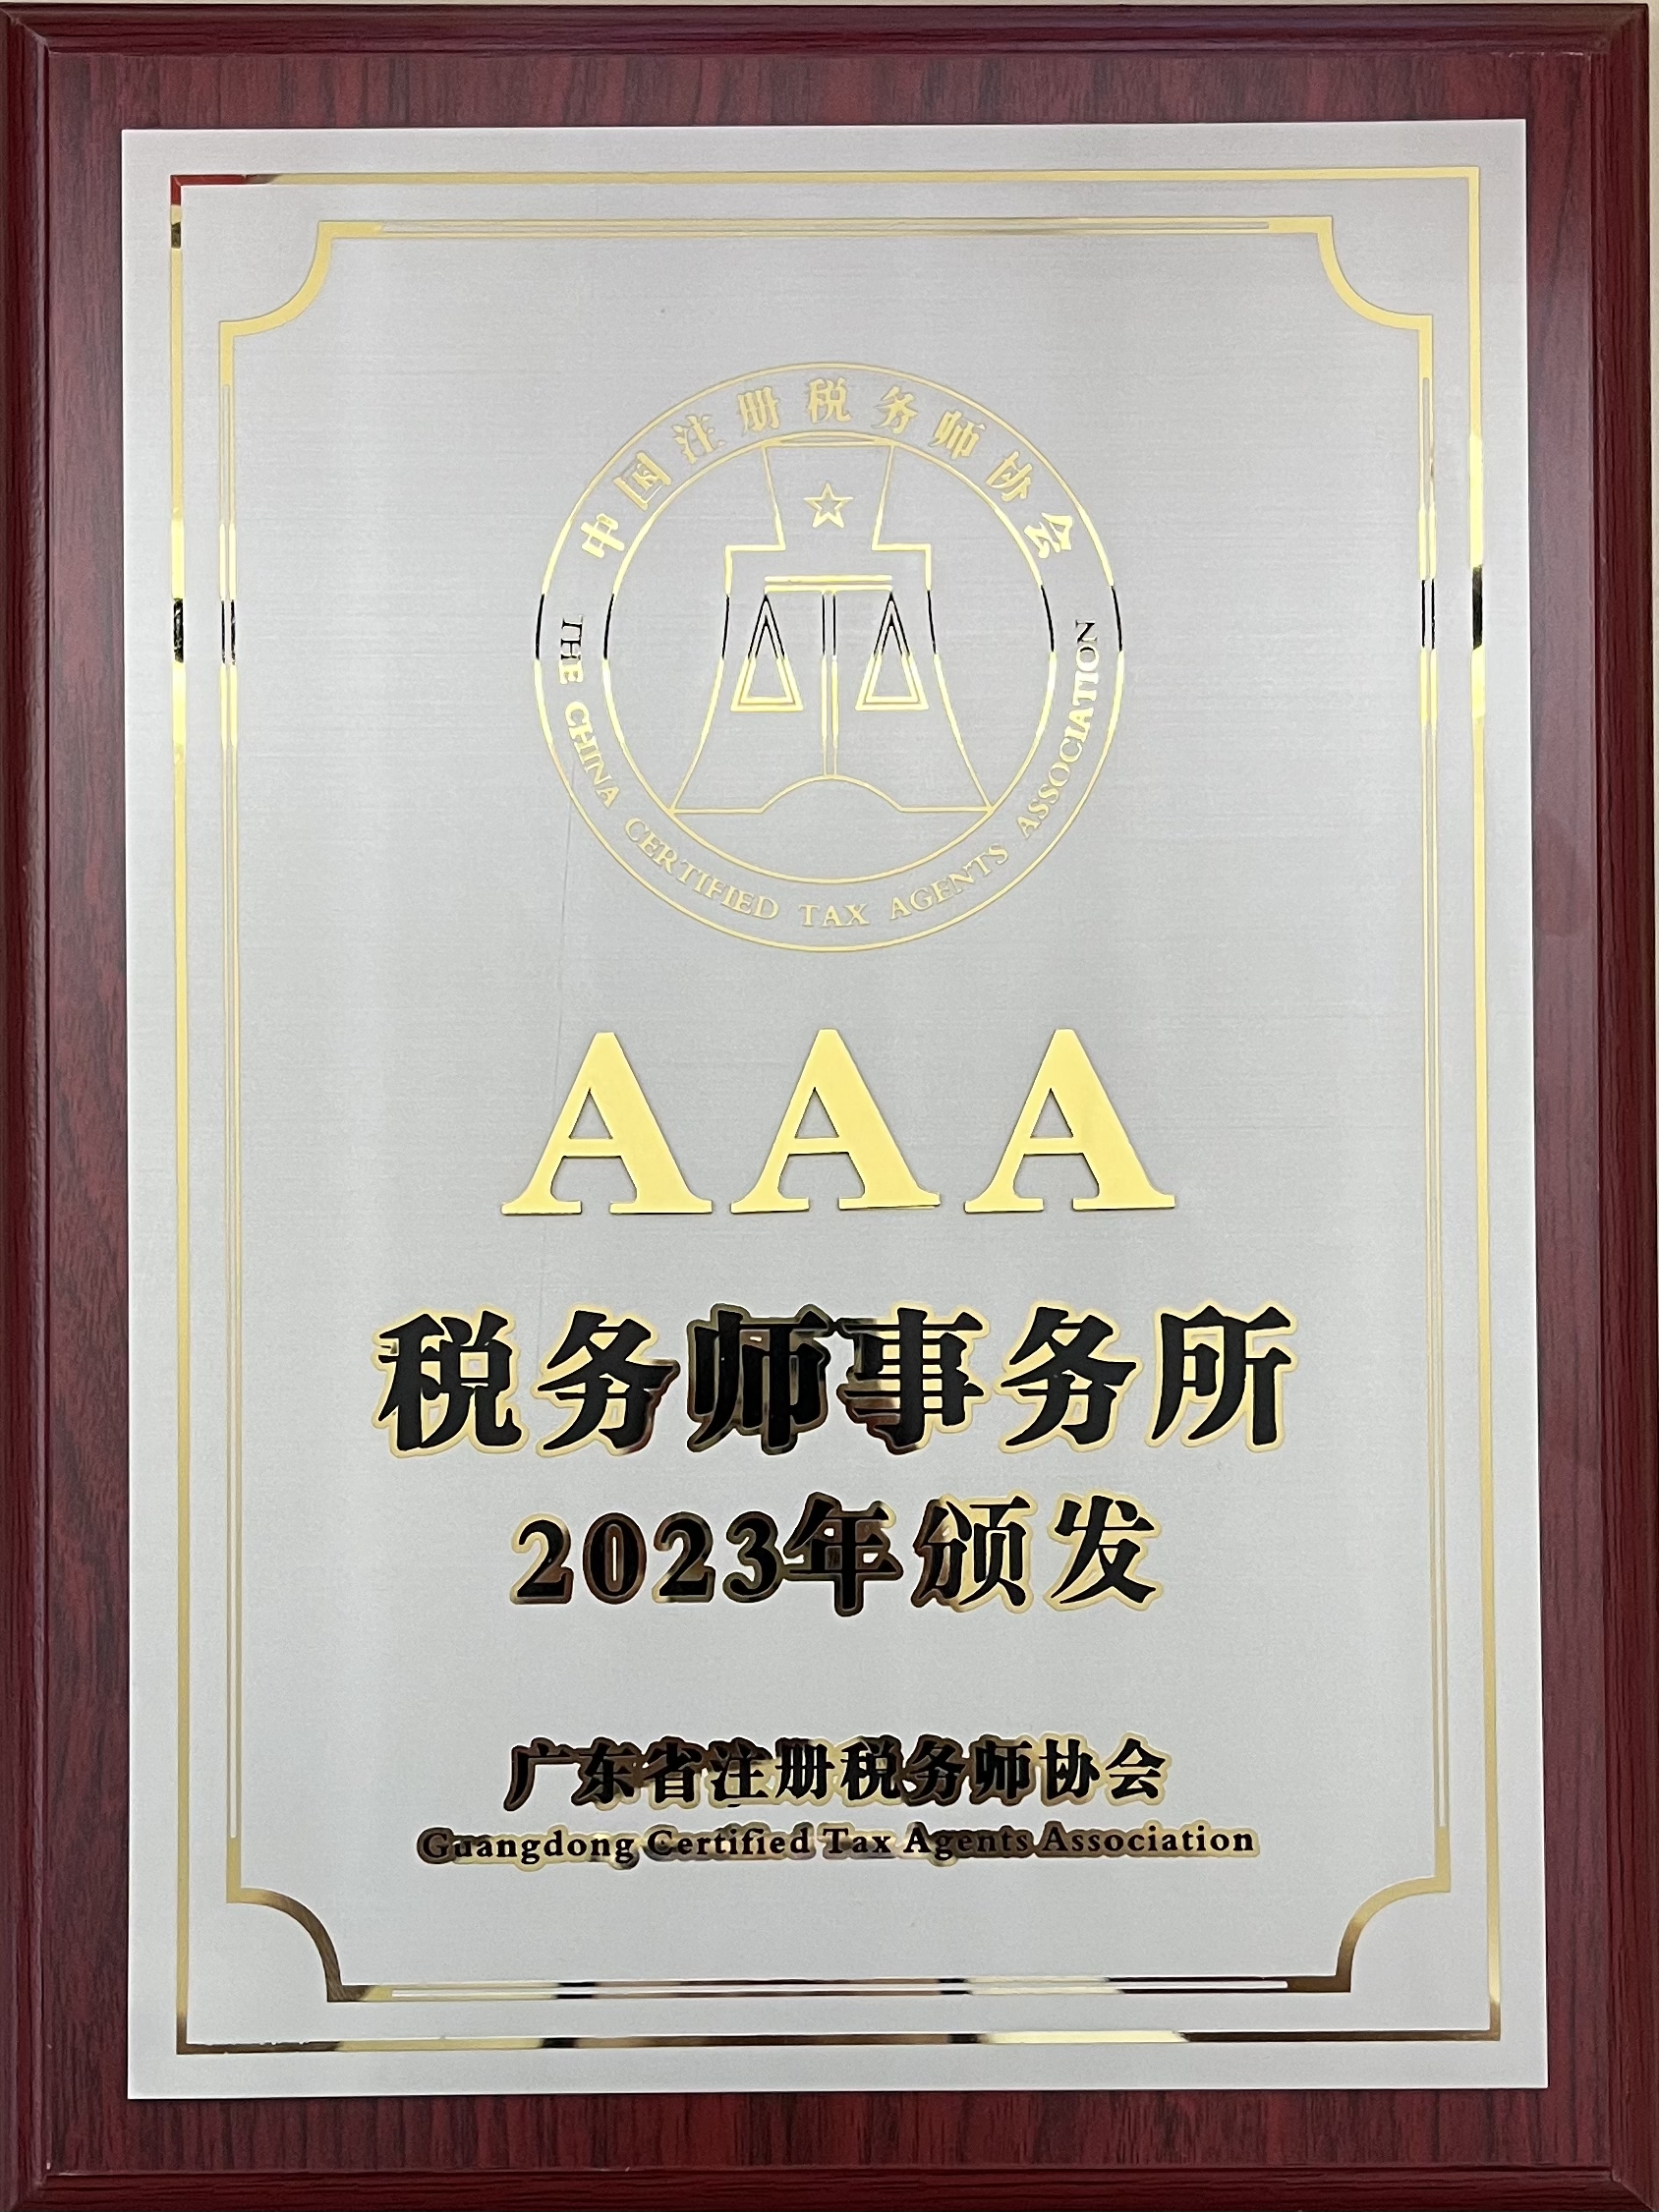 广州中海 AAA税务师事务所